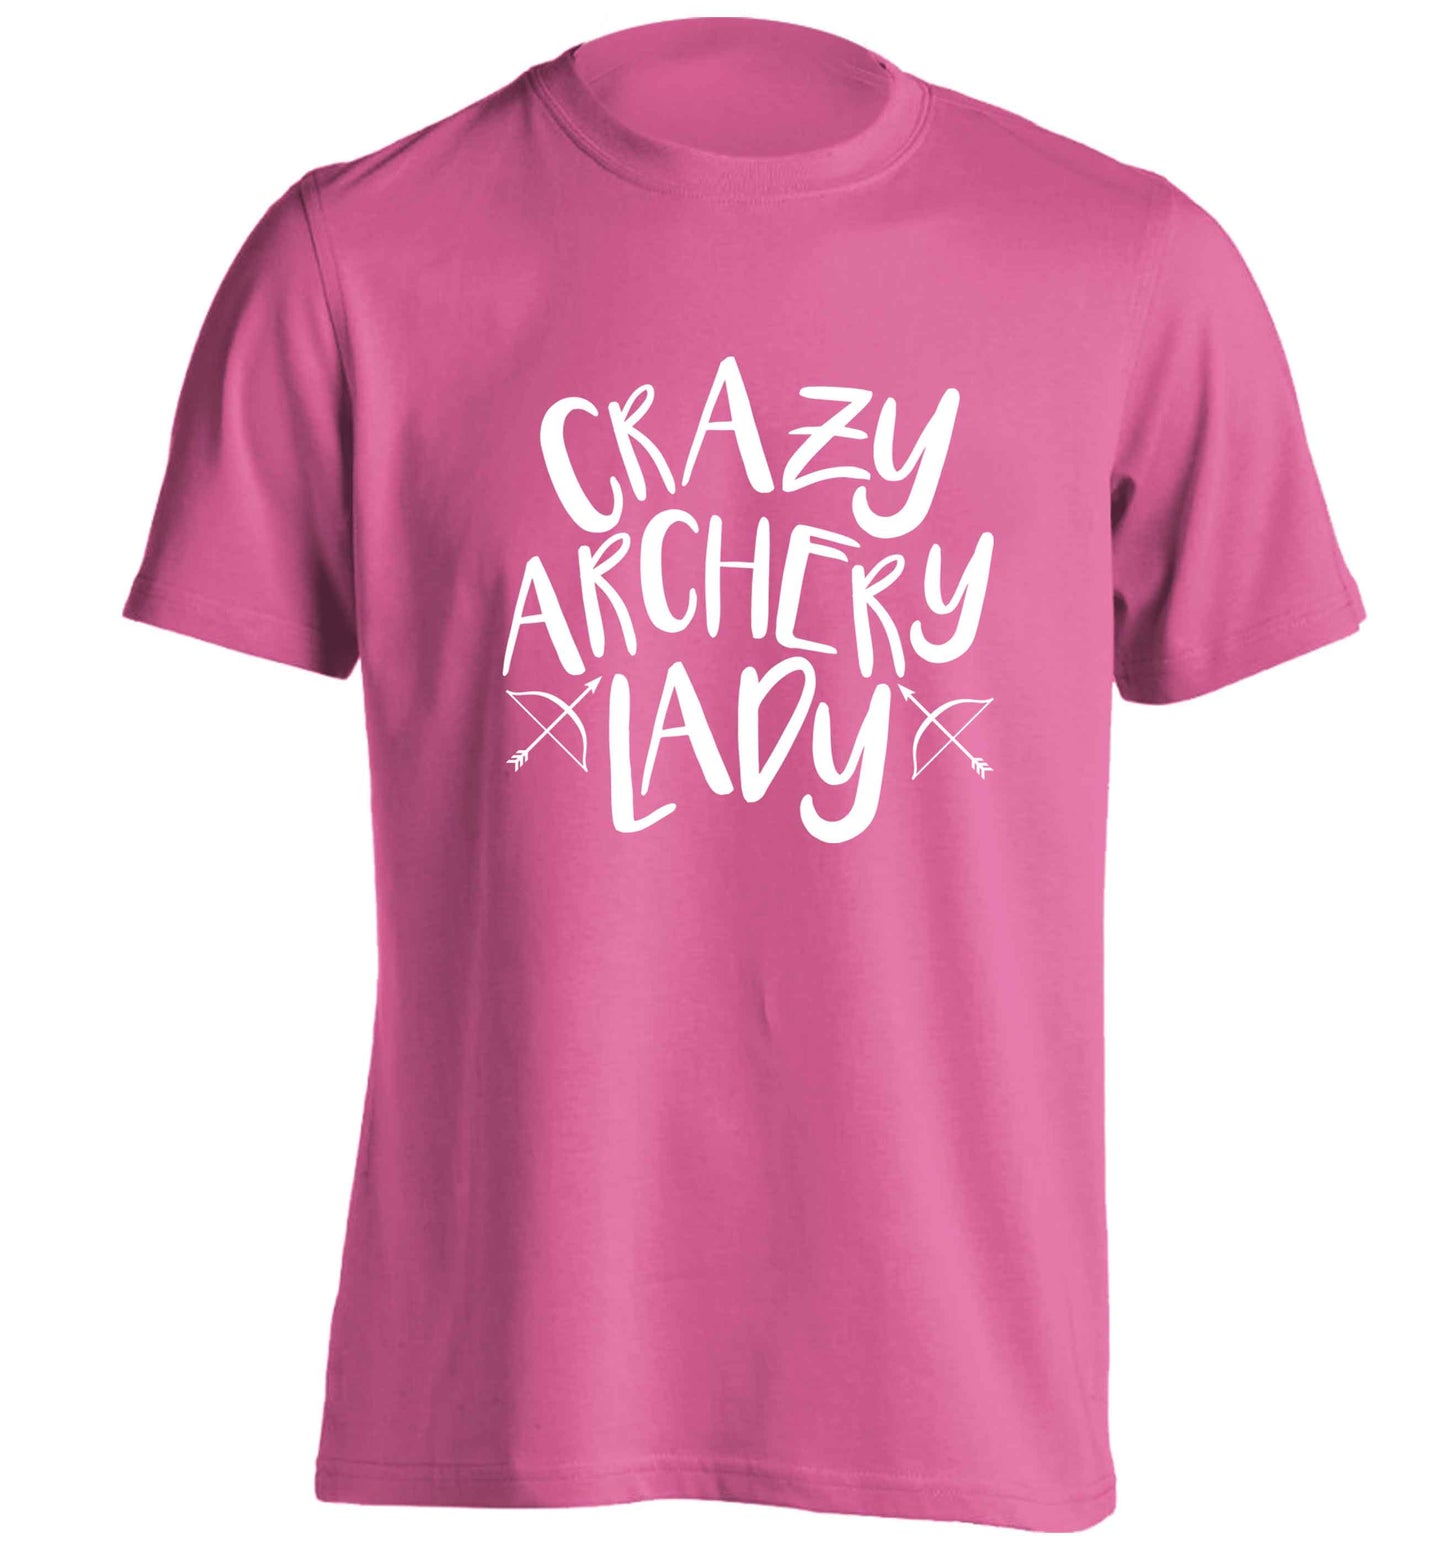 Crazy archery lady adults unisex pink Tshirt 2XL